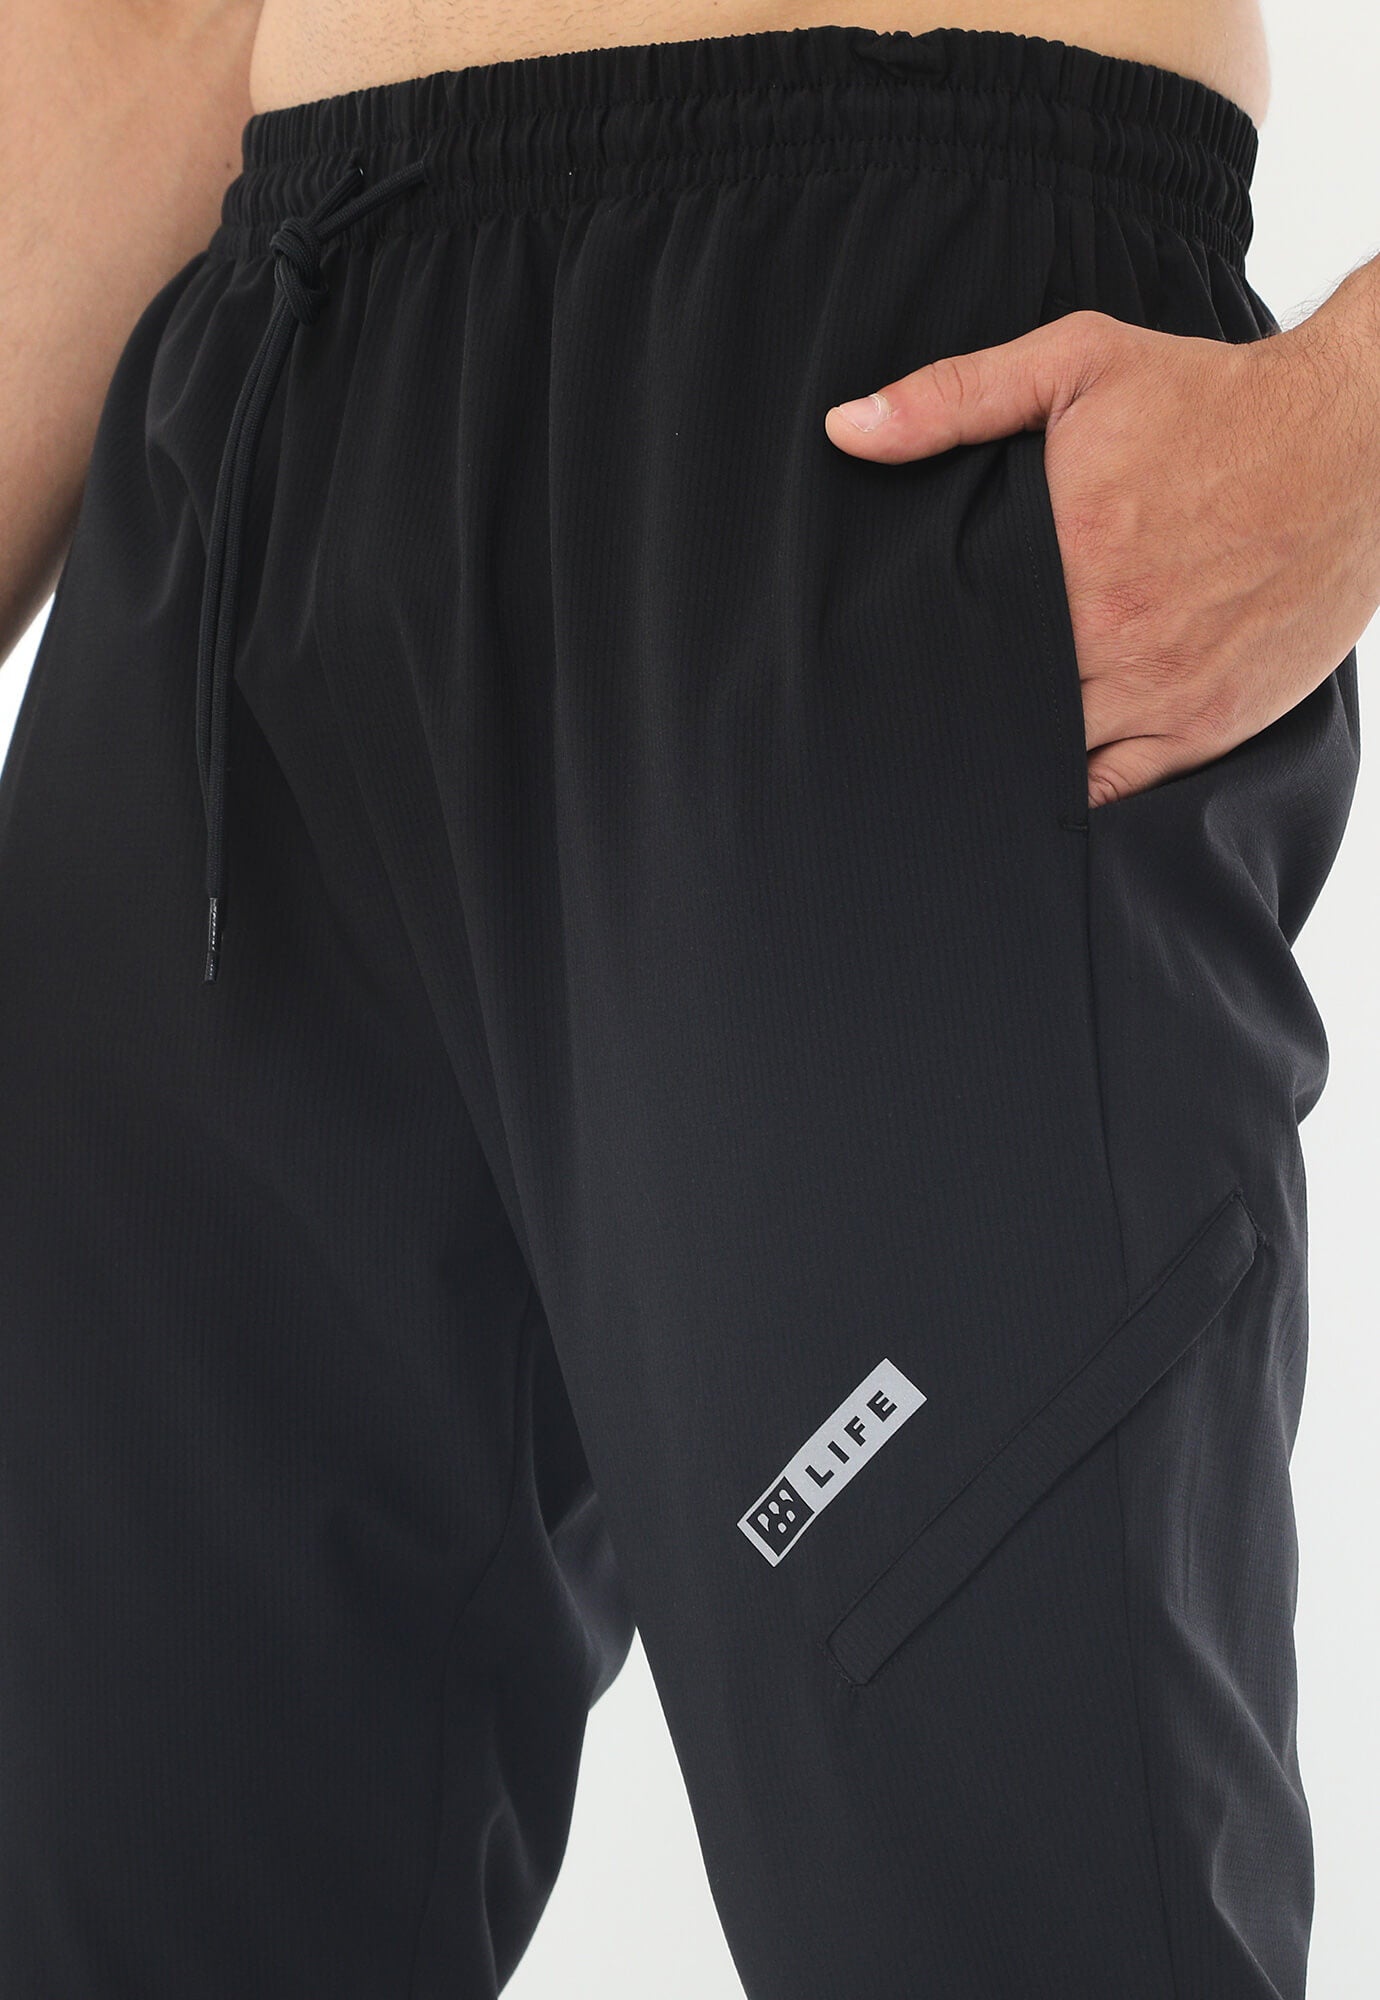 Pantalón deportivo negro tipo jogger con silueta ajustada, pretina con cordón ajustable y bolsillos laterales para hombre